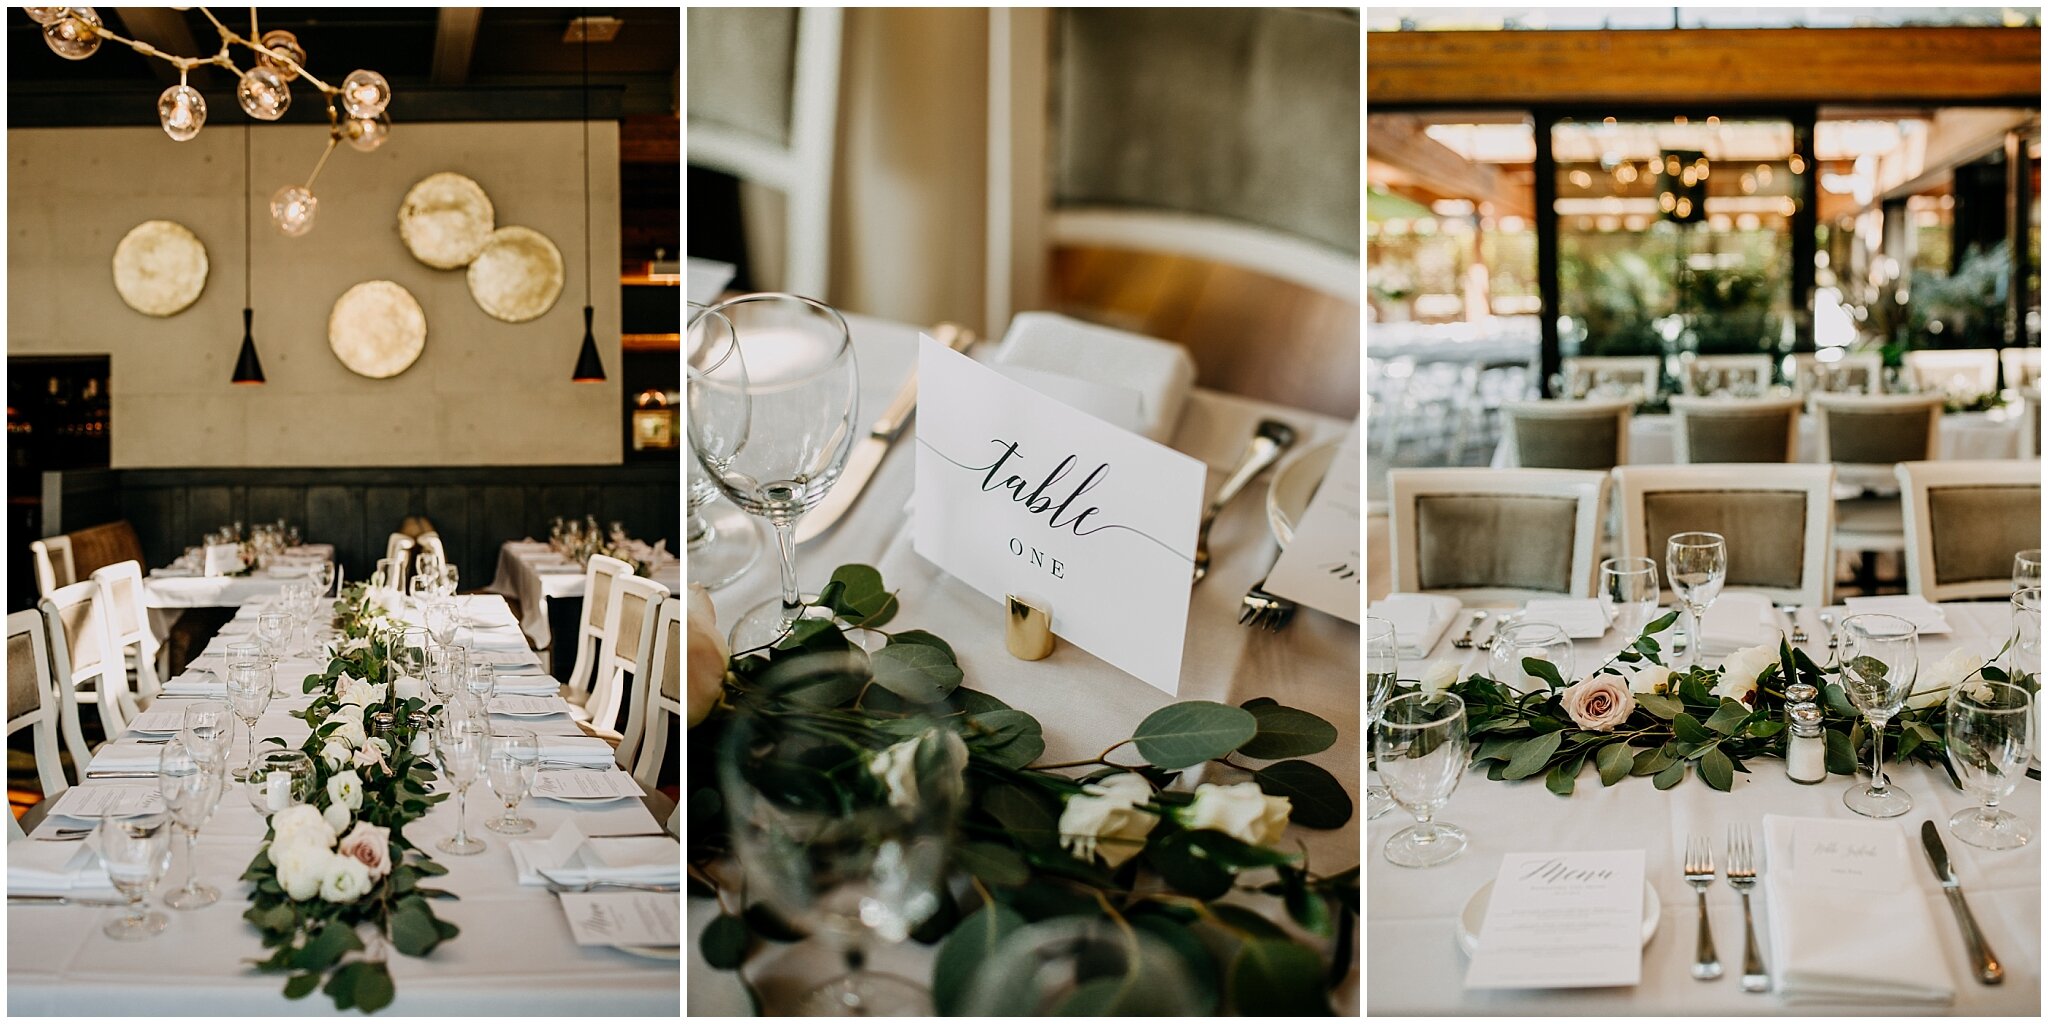 shaughnessy restaurant wedding reception decor details